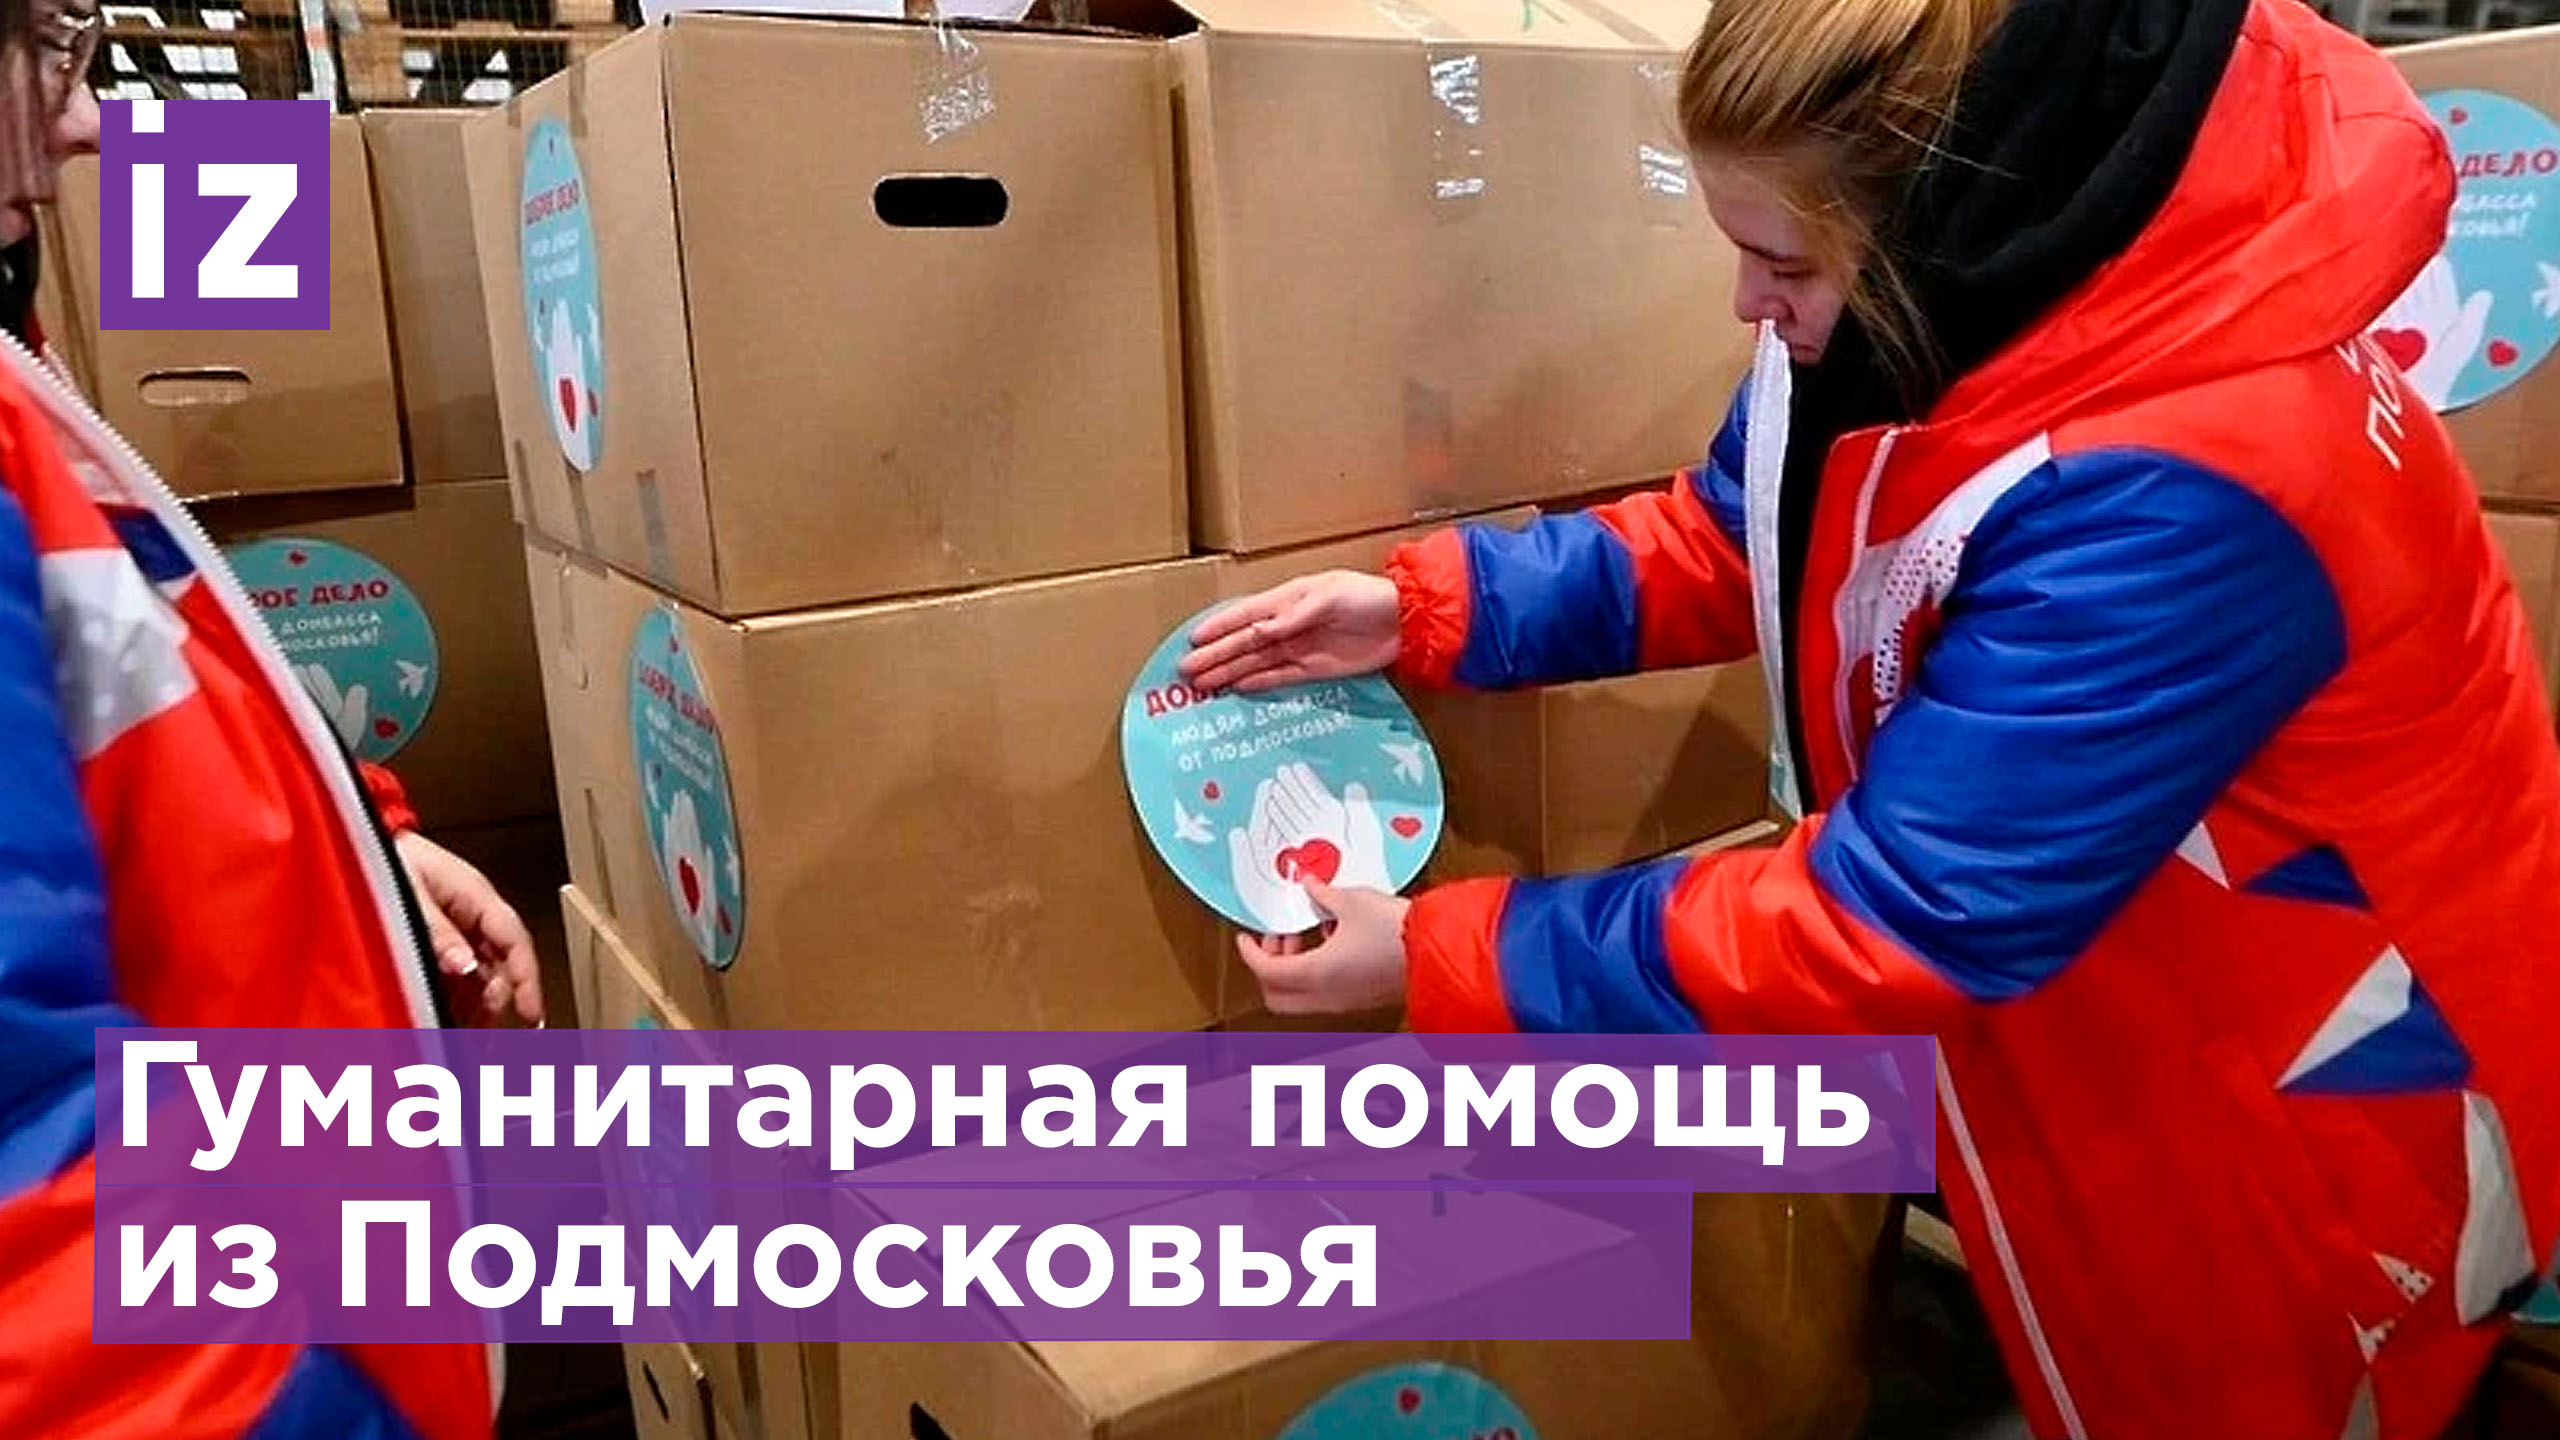 Гуманитарная помощь из Подмосковья была доставлена в Донбасс / Известия